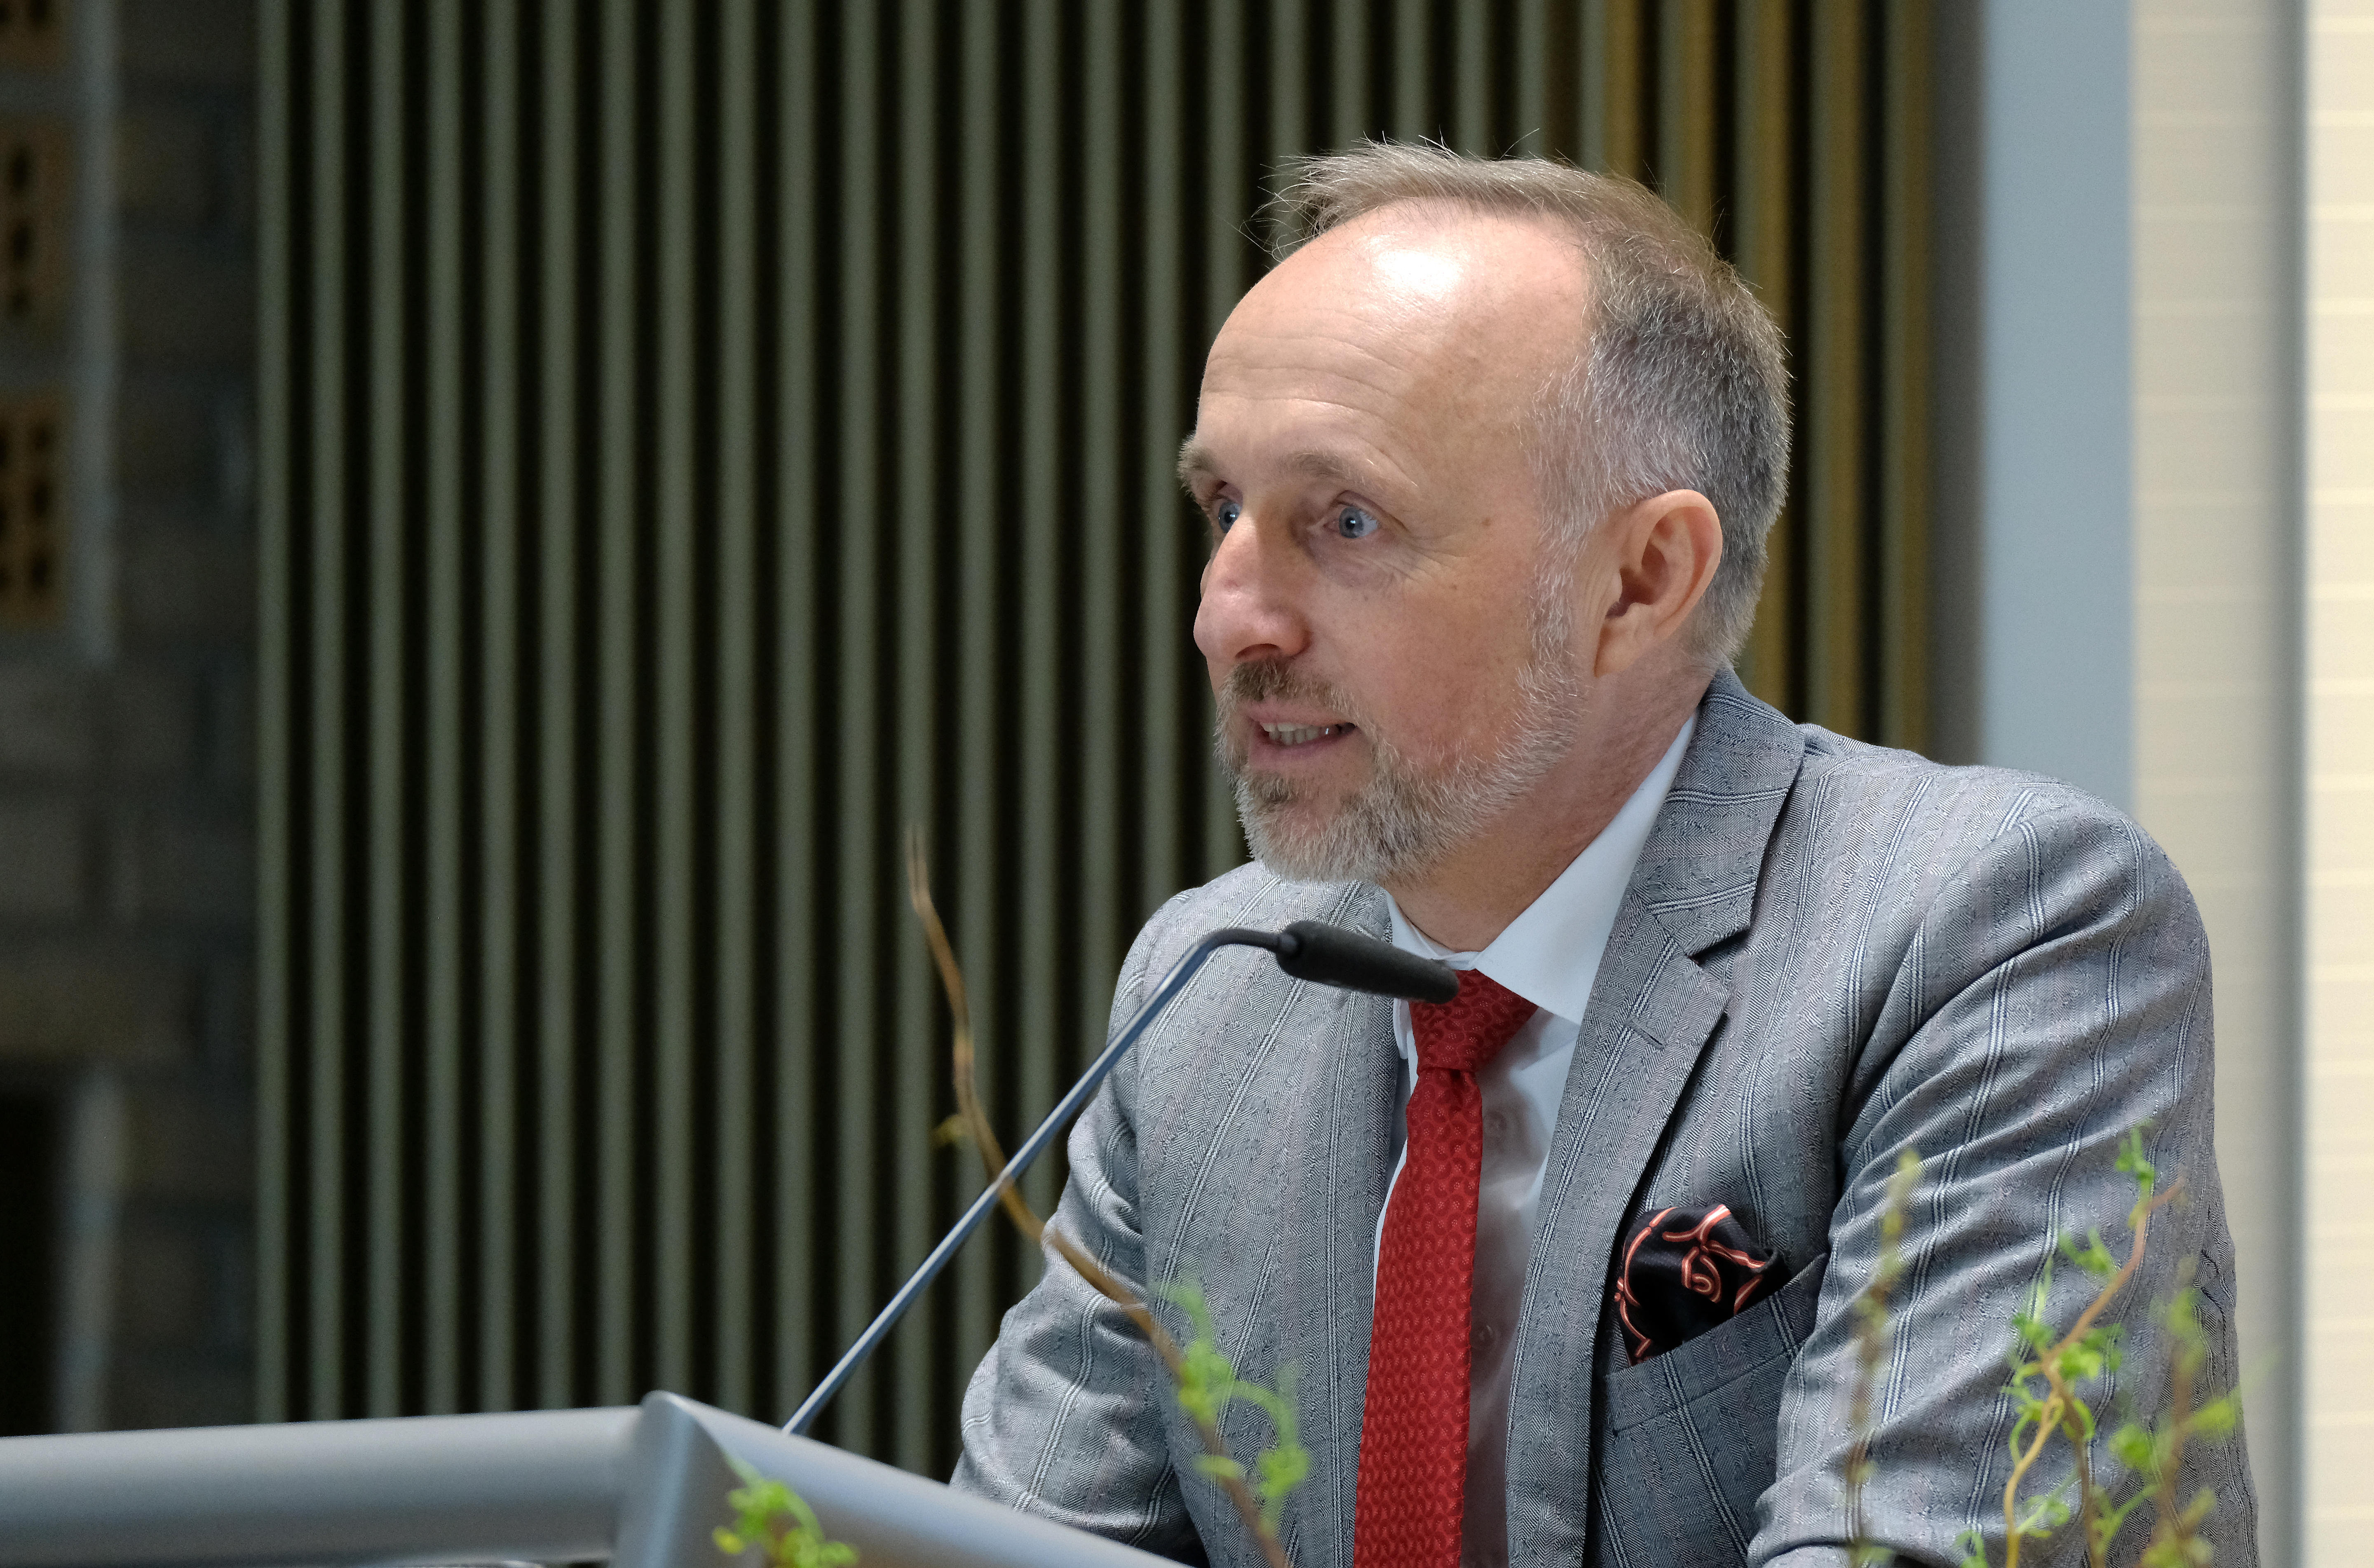 Dr. Stephan Hofmeister, stellvertretender Vorsitzender der Kassenärztlichen Bundesvereinigung